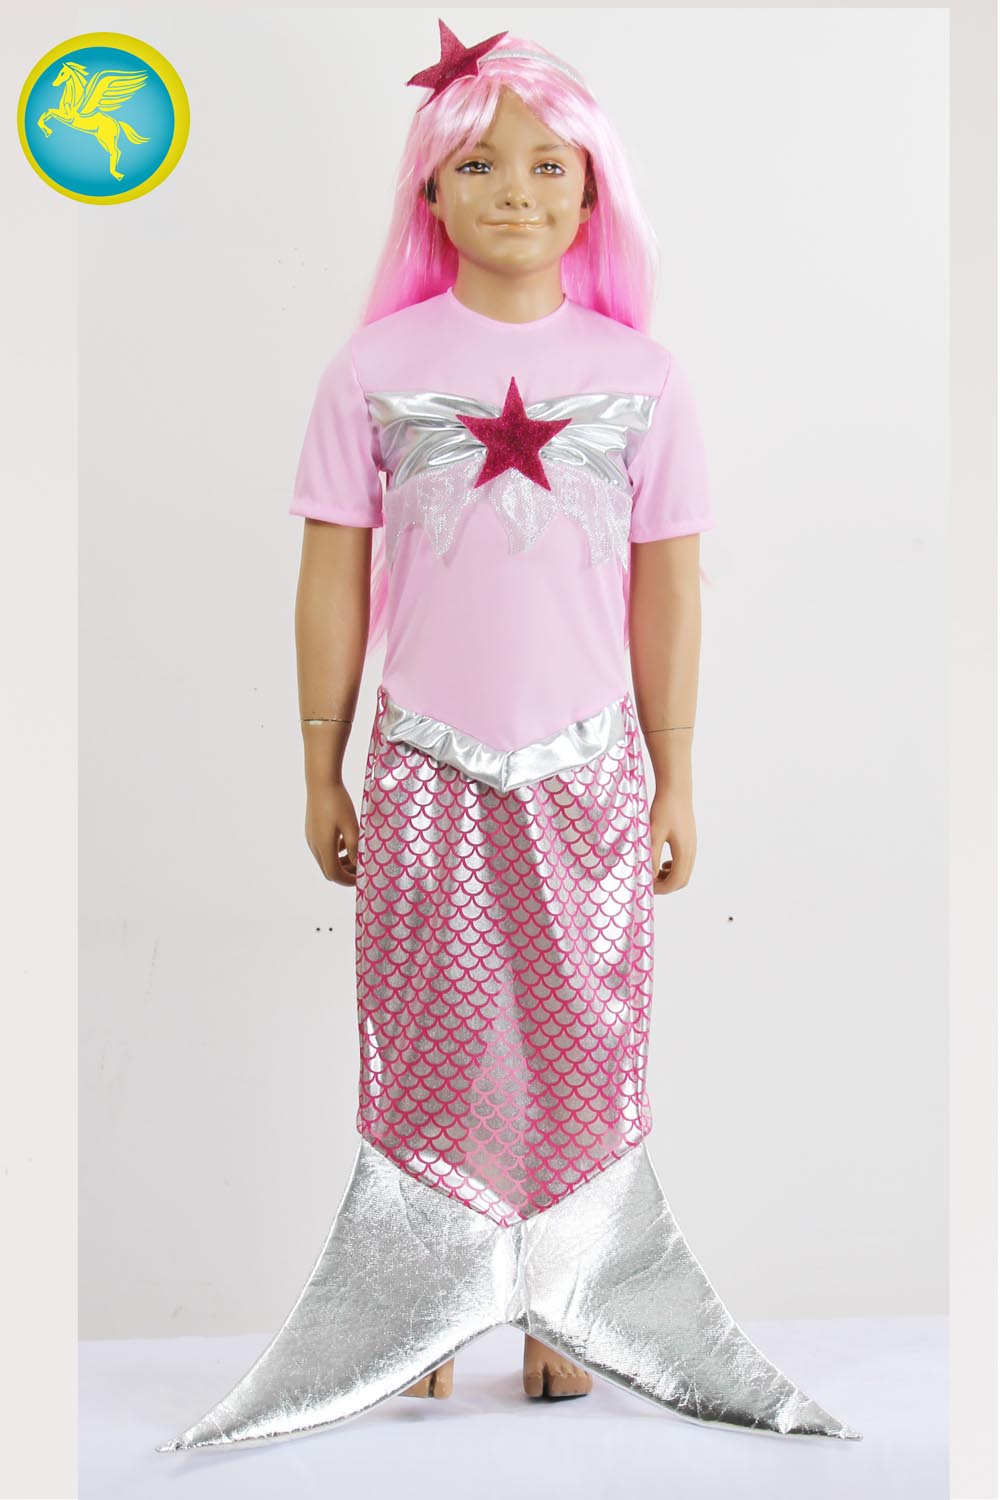 Costume Carnevale per Bambina - Vestito da Sirenetta (5-6 anni